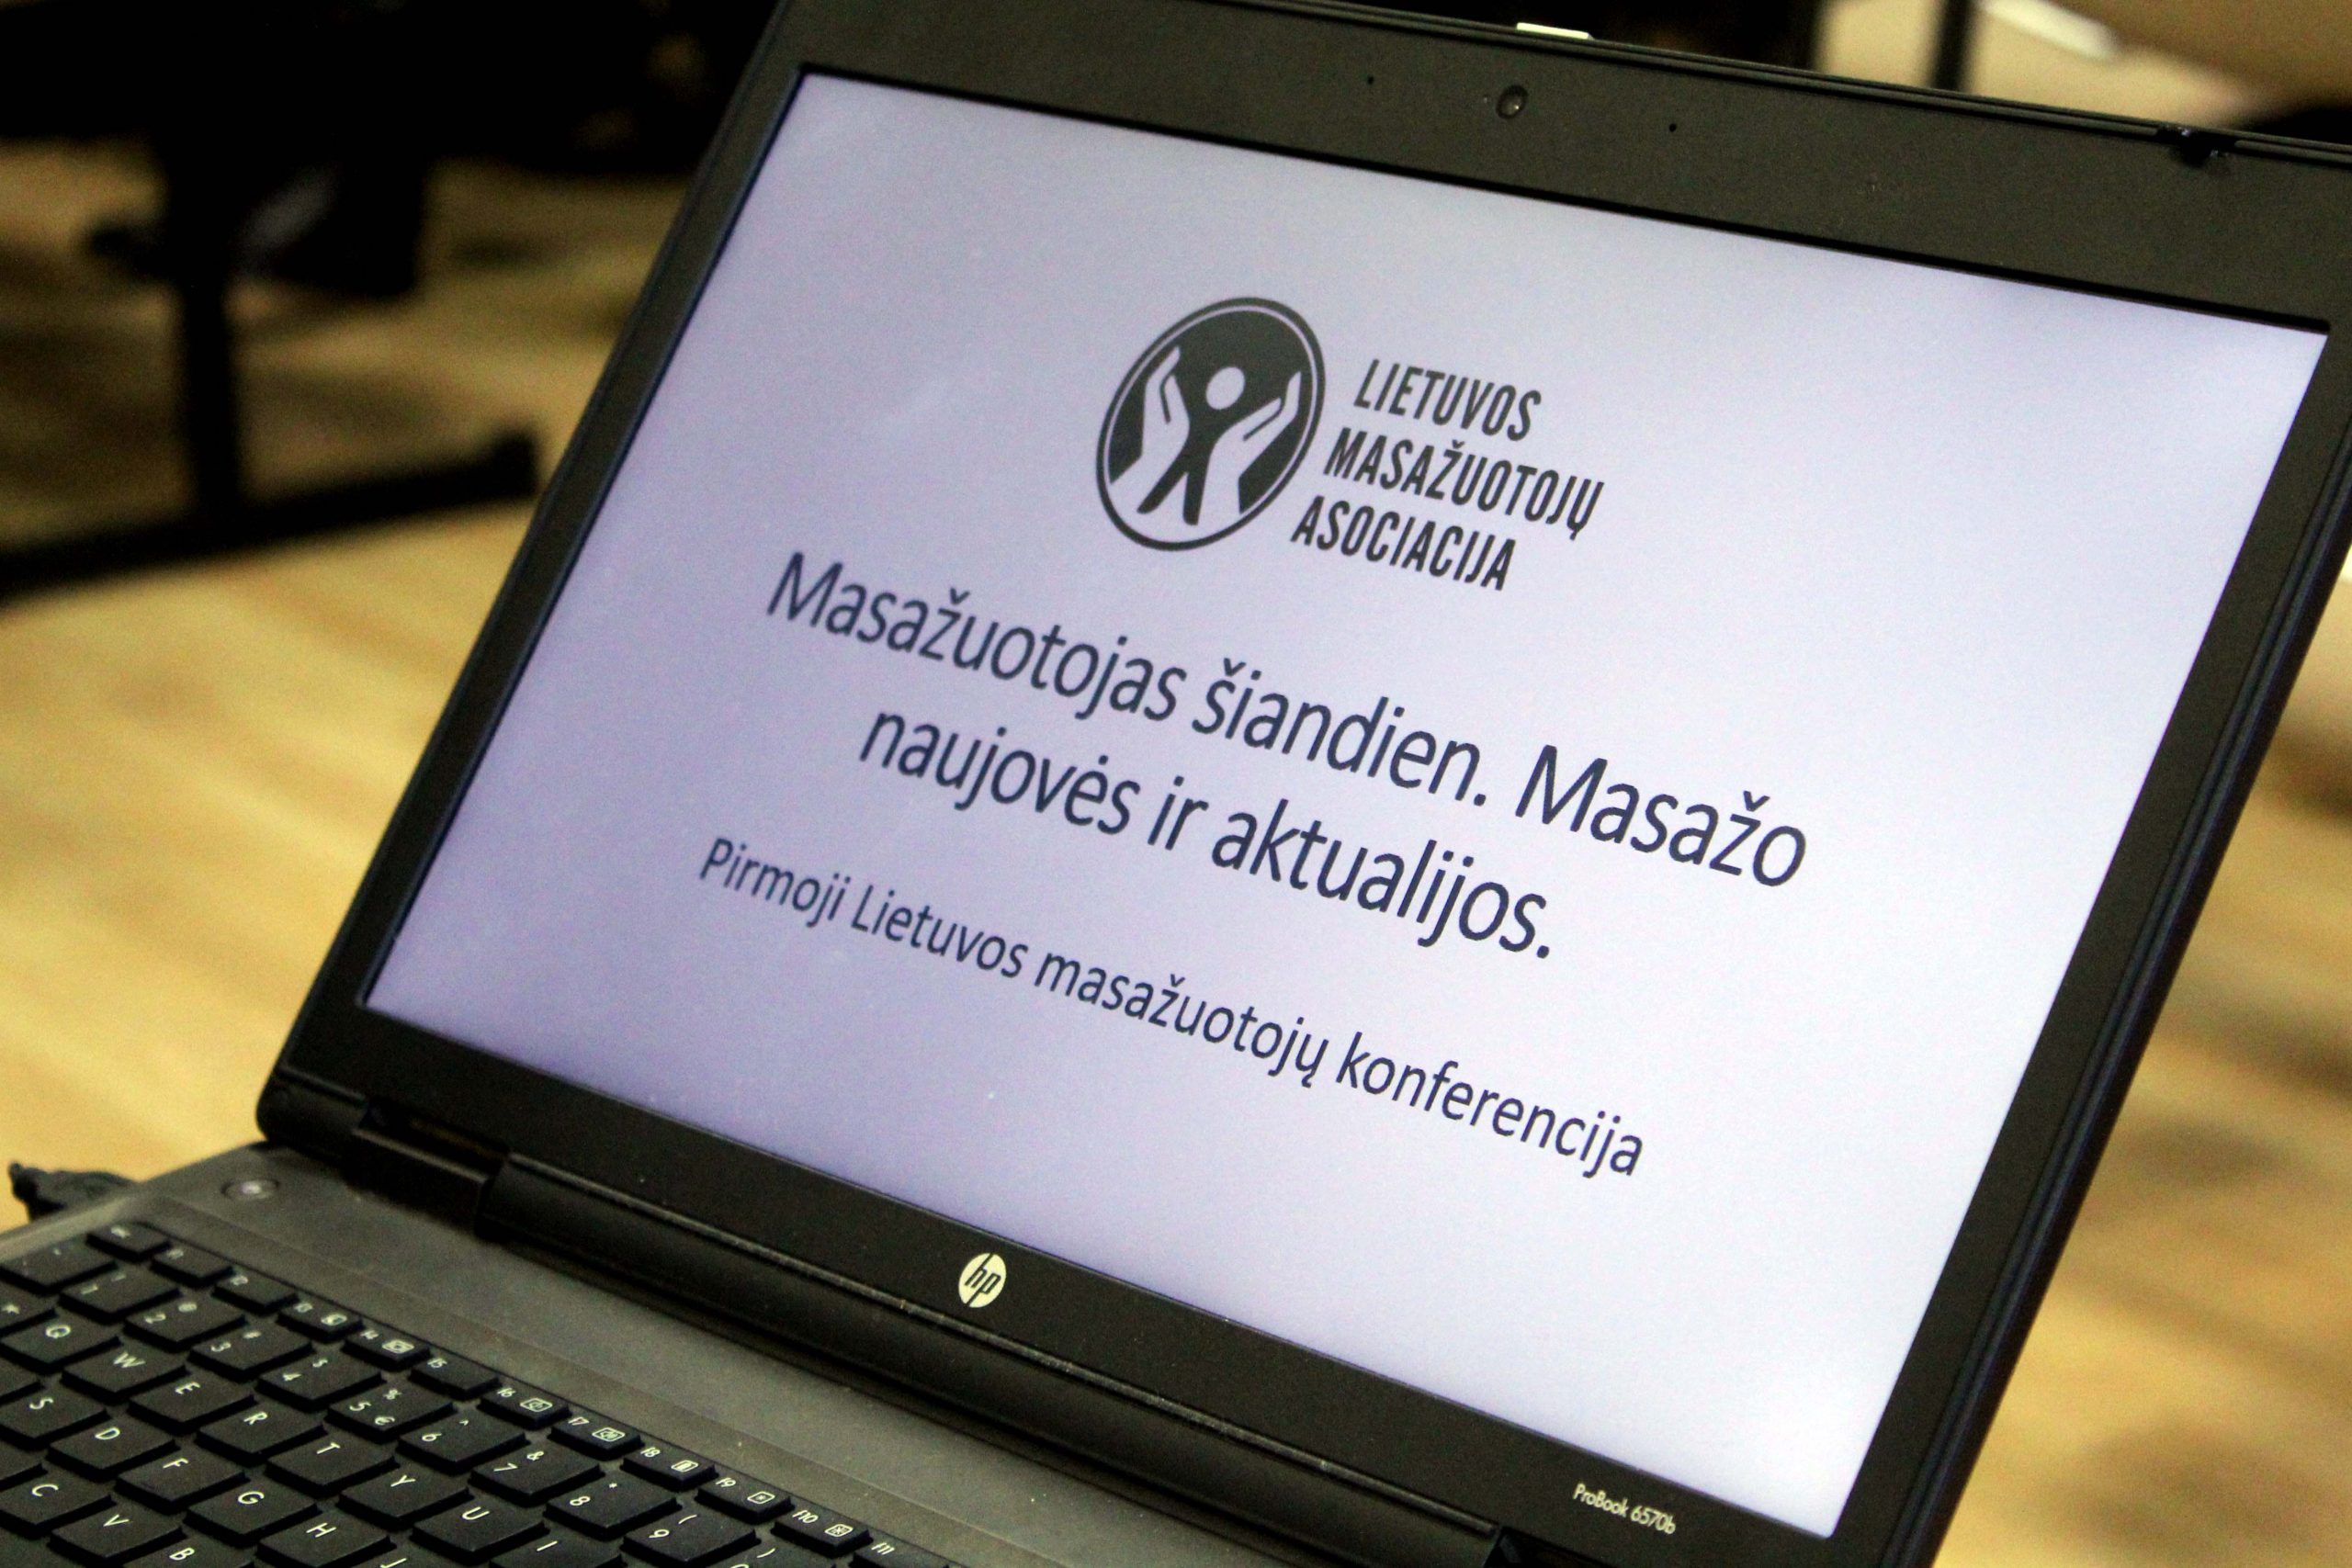 Pirmoji Lietuvos masažuotojų konferencija